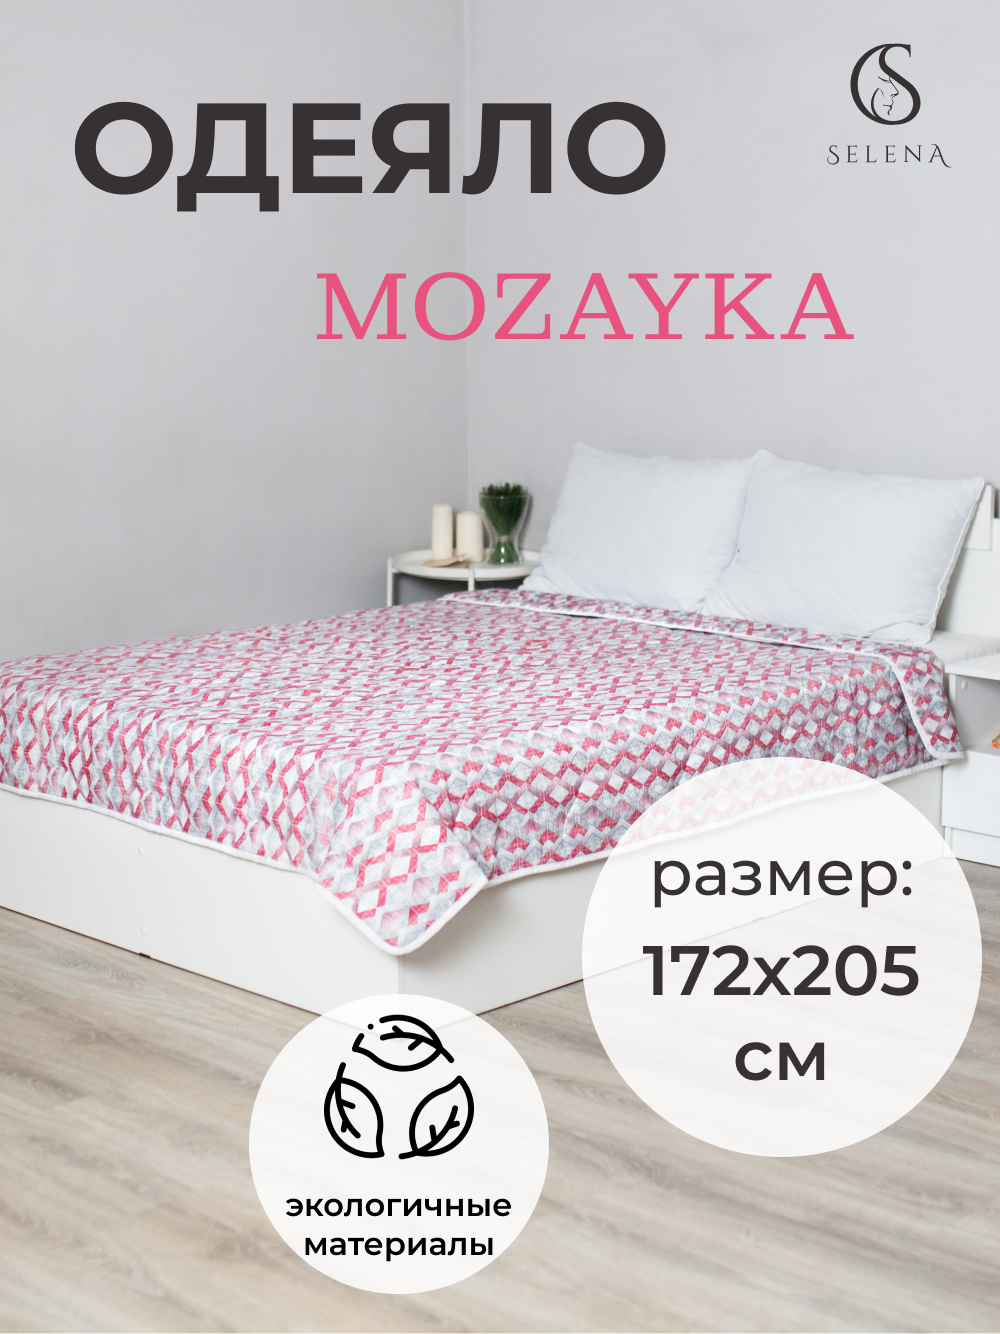 Одеяло SELENA Mozayka всесезонное, 2 спальный, 172х205см